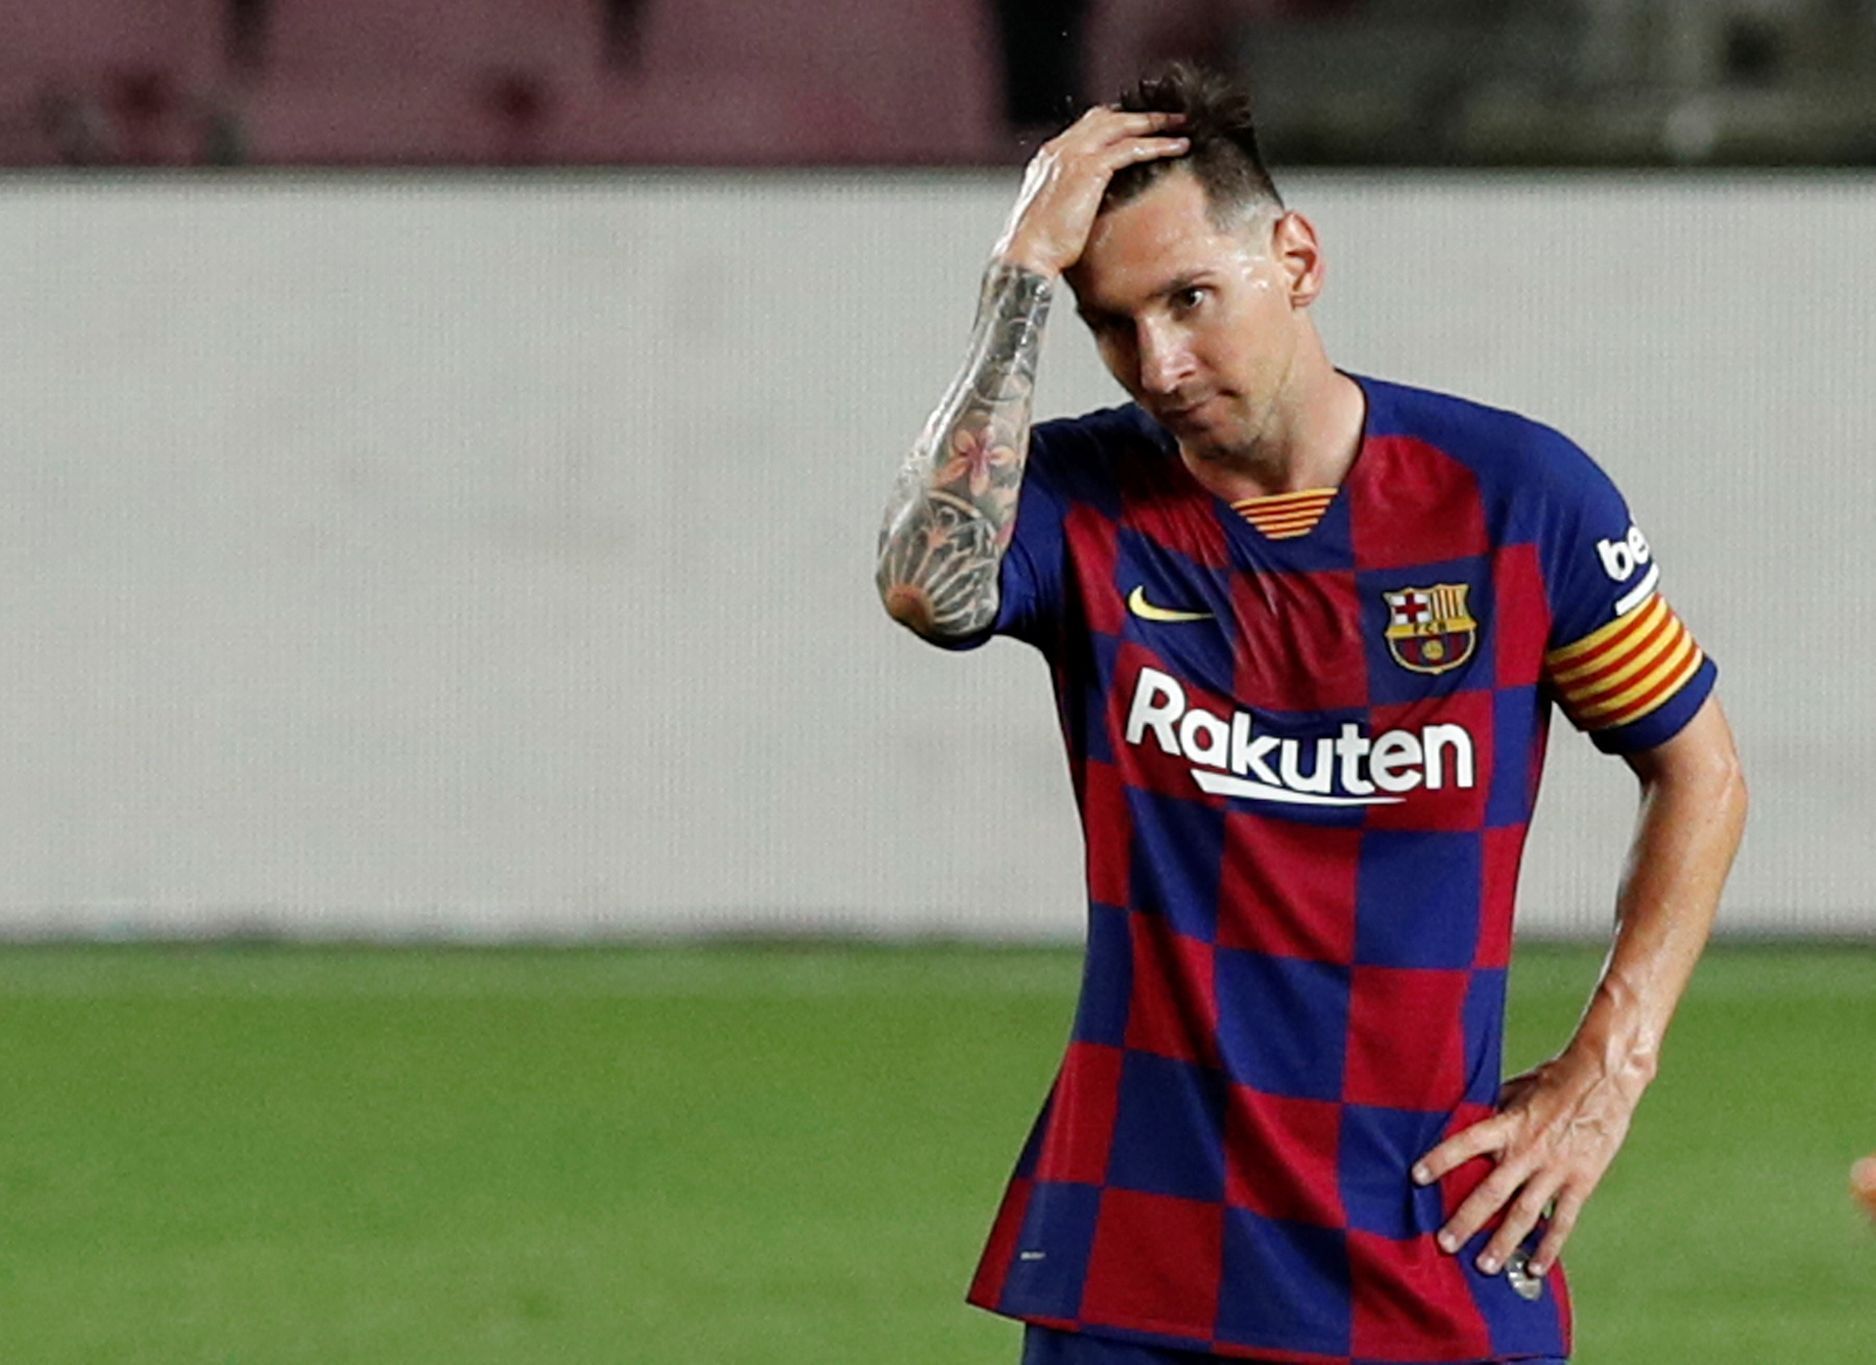 33. kolo španělské fotbalové ligy 2019/20, Barcelona - Atlético Madrid: Zklamaný Lionel Messi